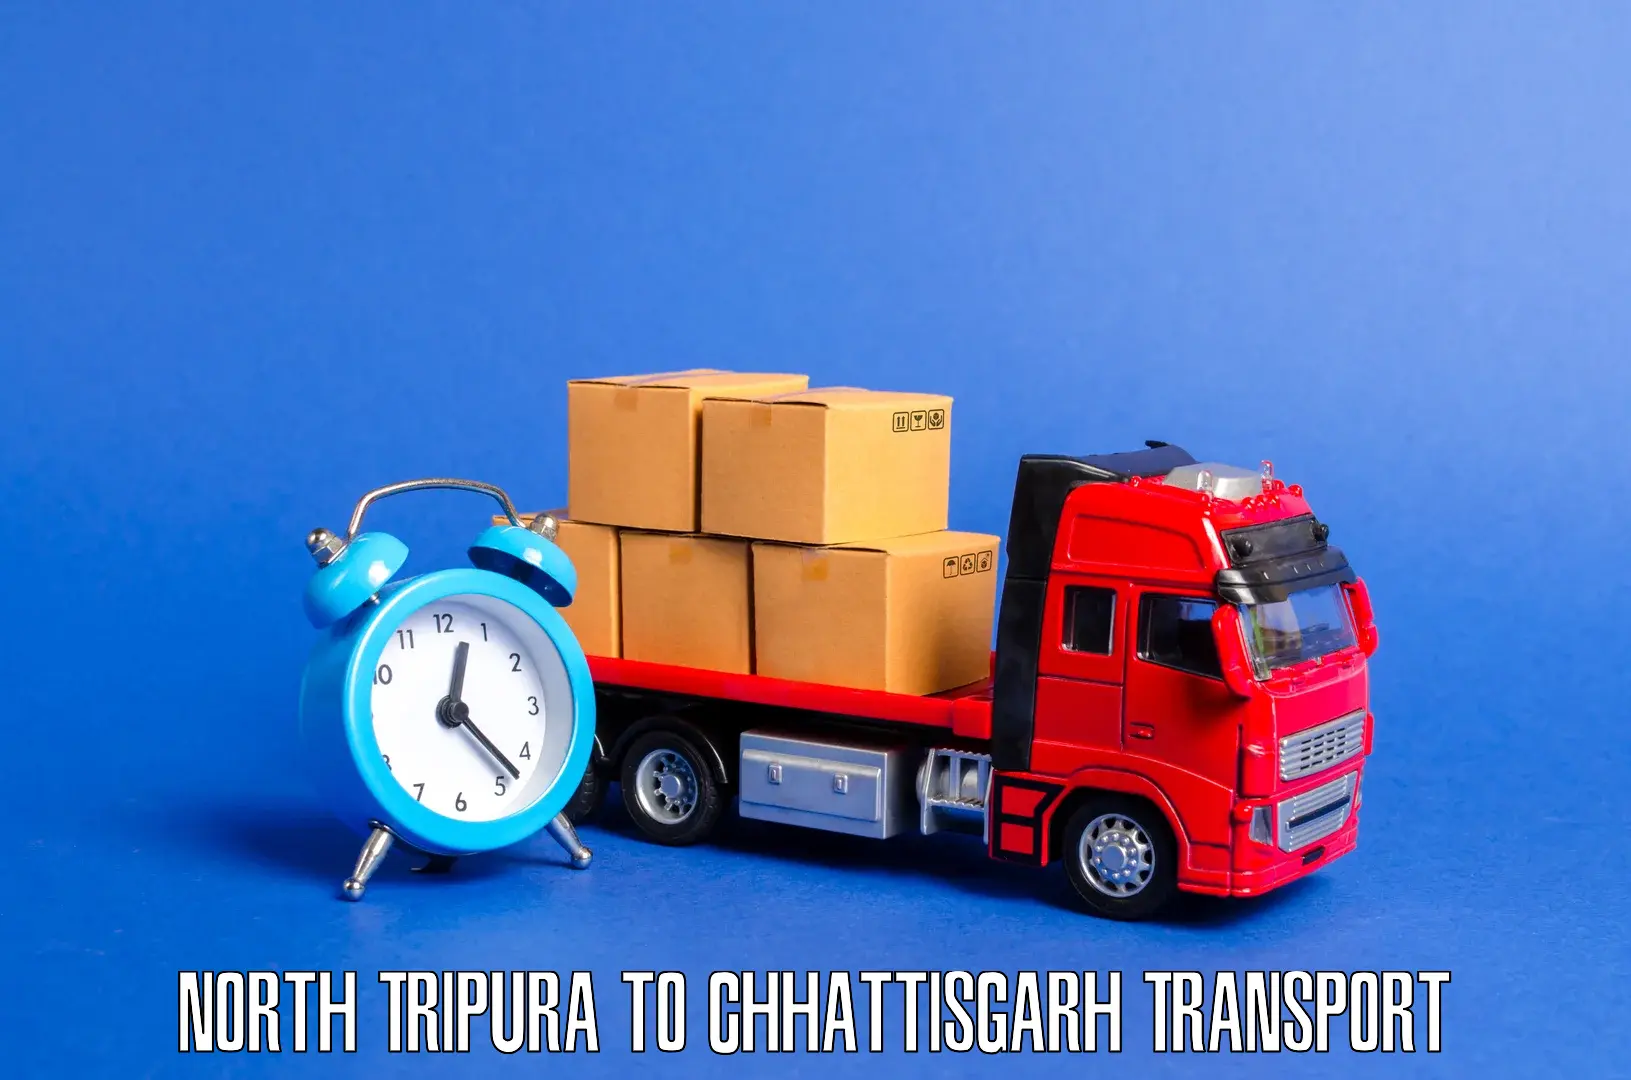 Container transport service North Tripura to Bhilai